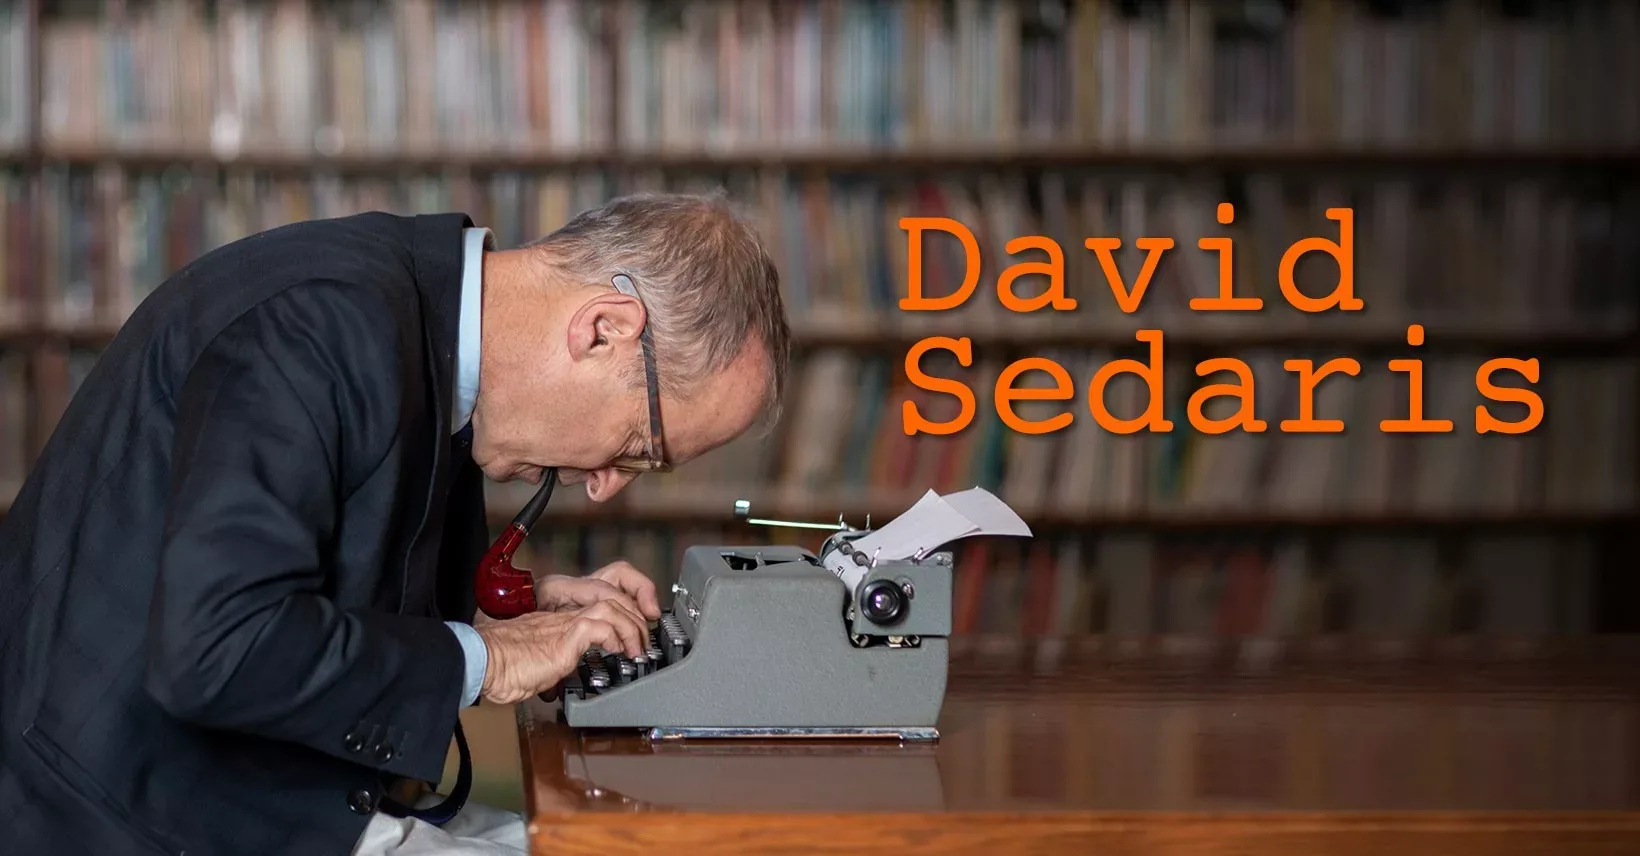 An Evening with <strong>David Sedaris</strong>